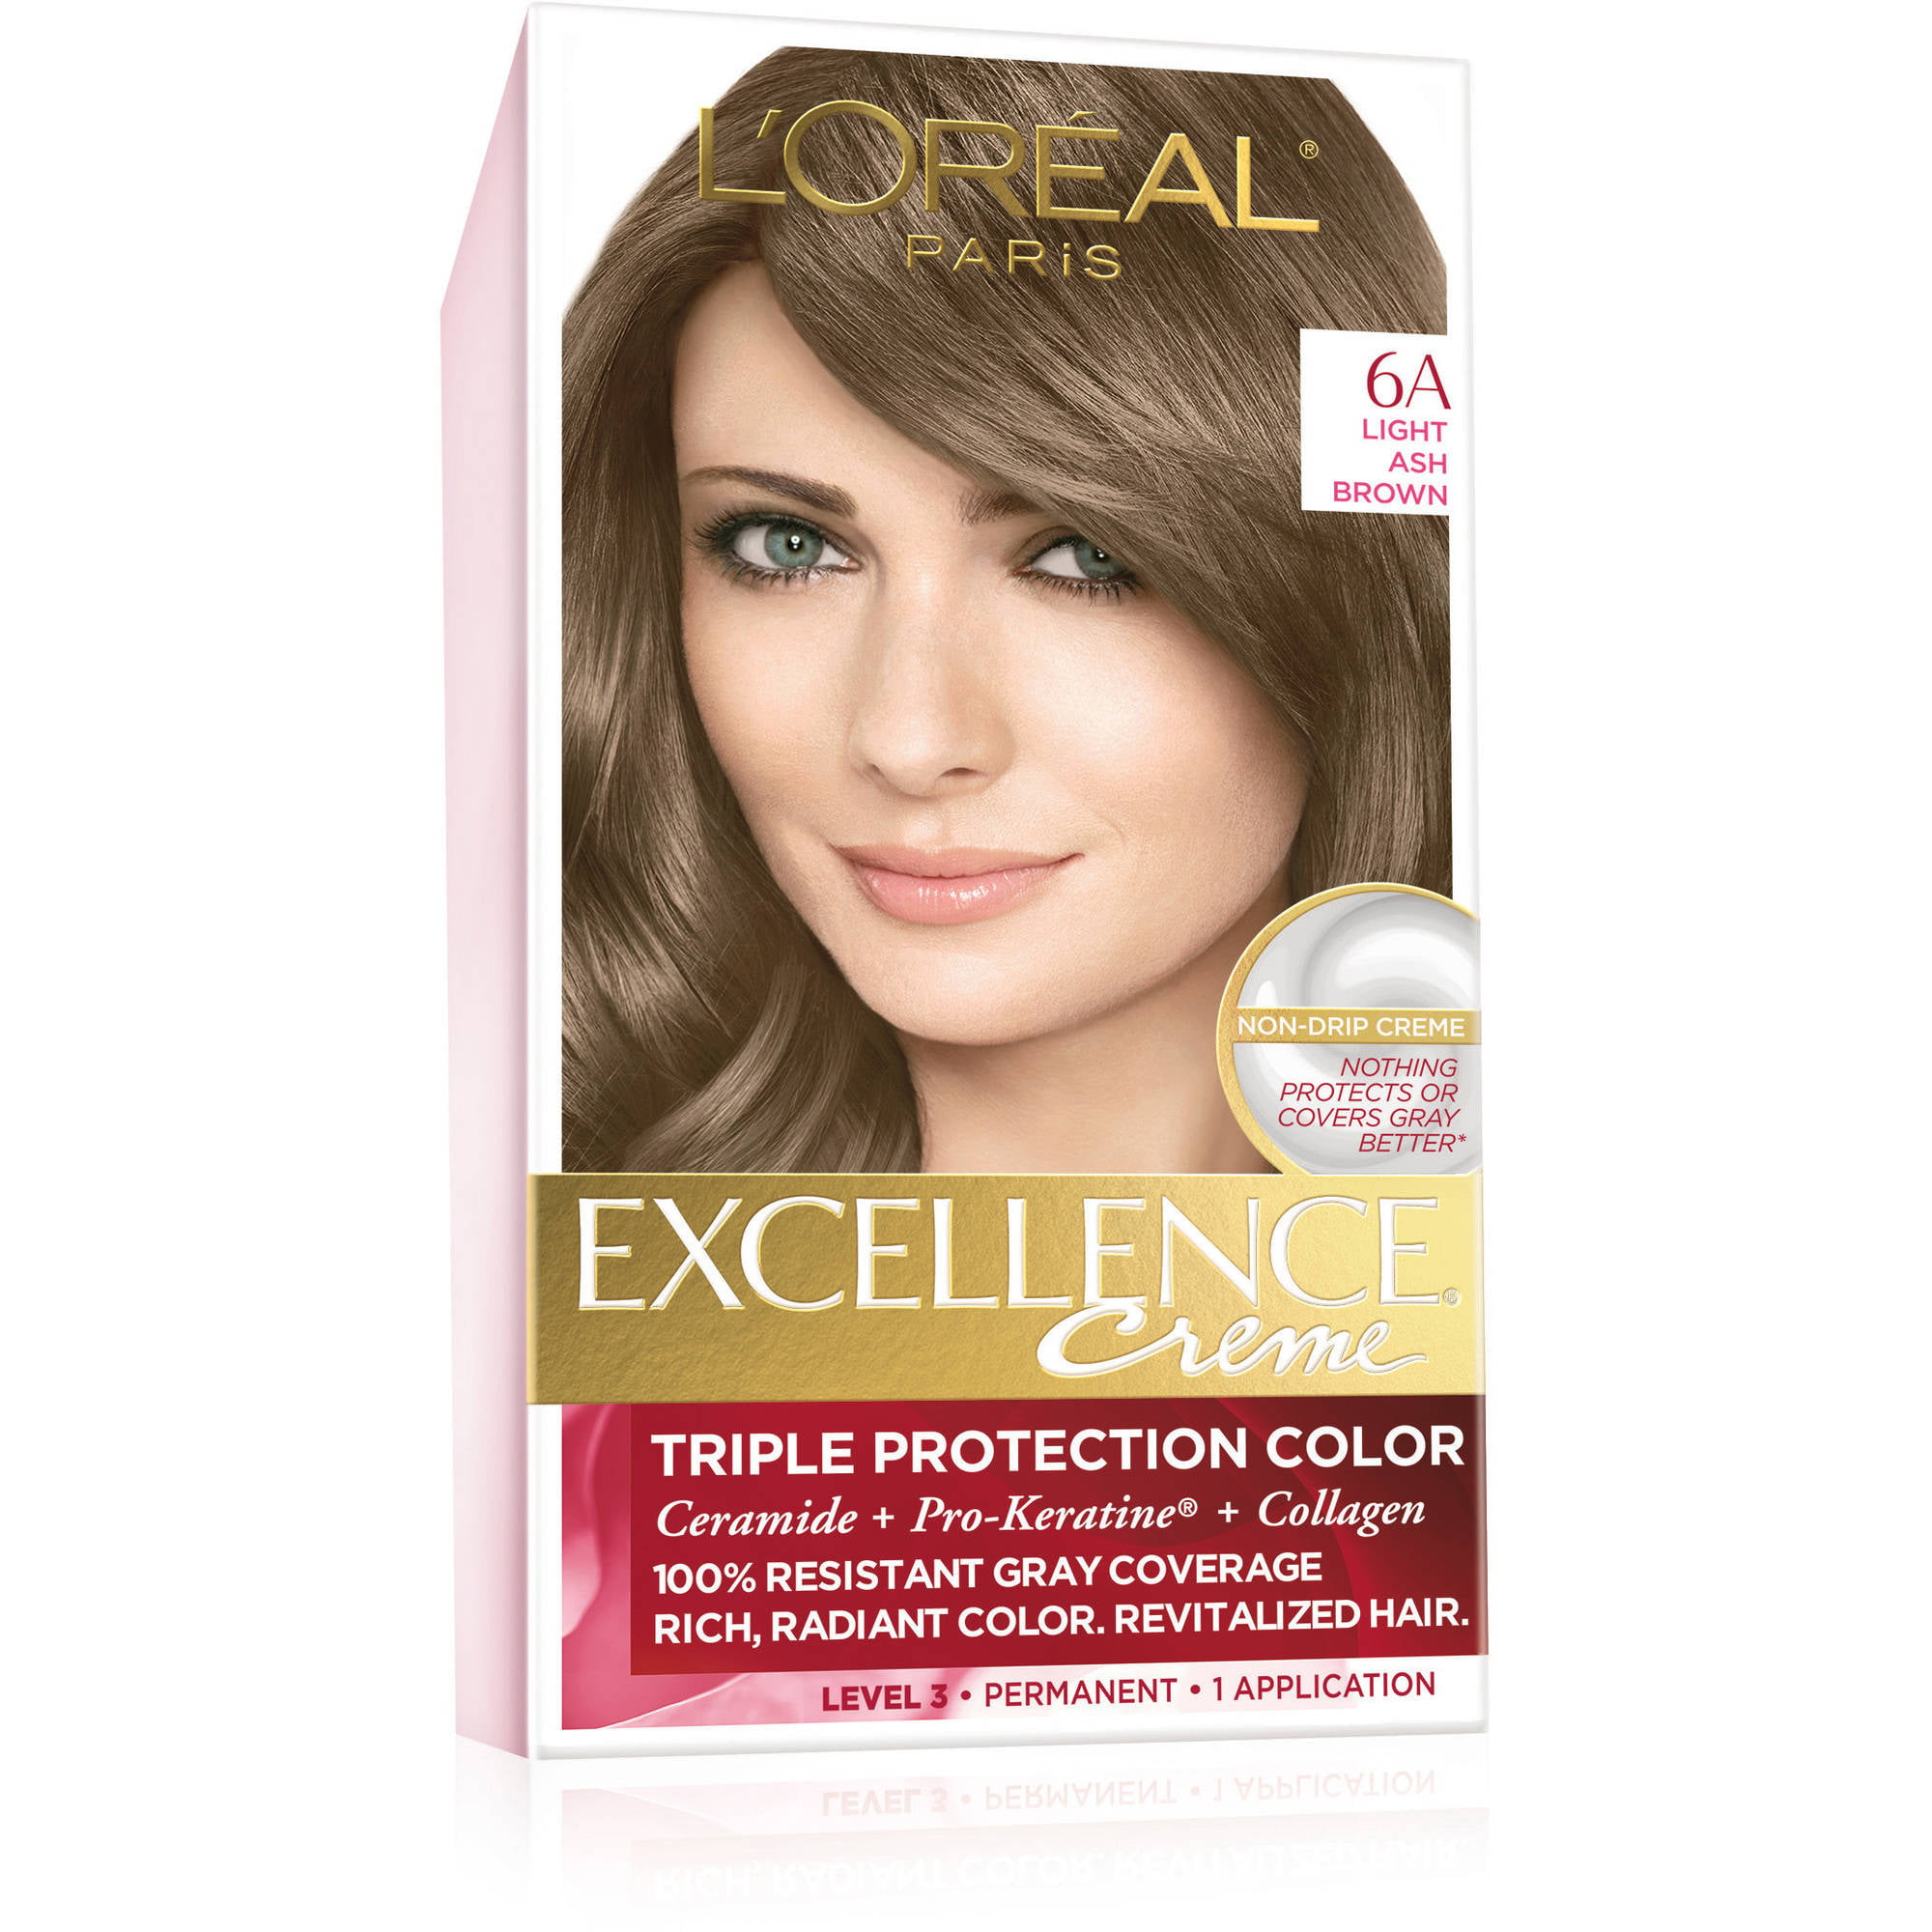 L'Oreal Paris Excellence Creme Triple Protection Permanent Hair Color